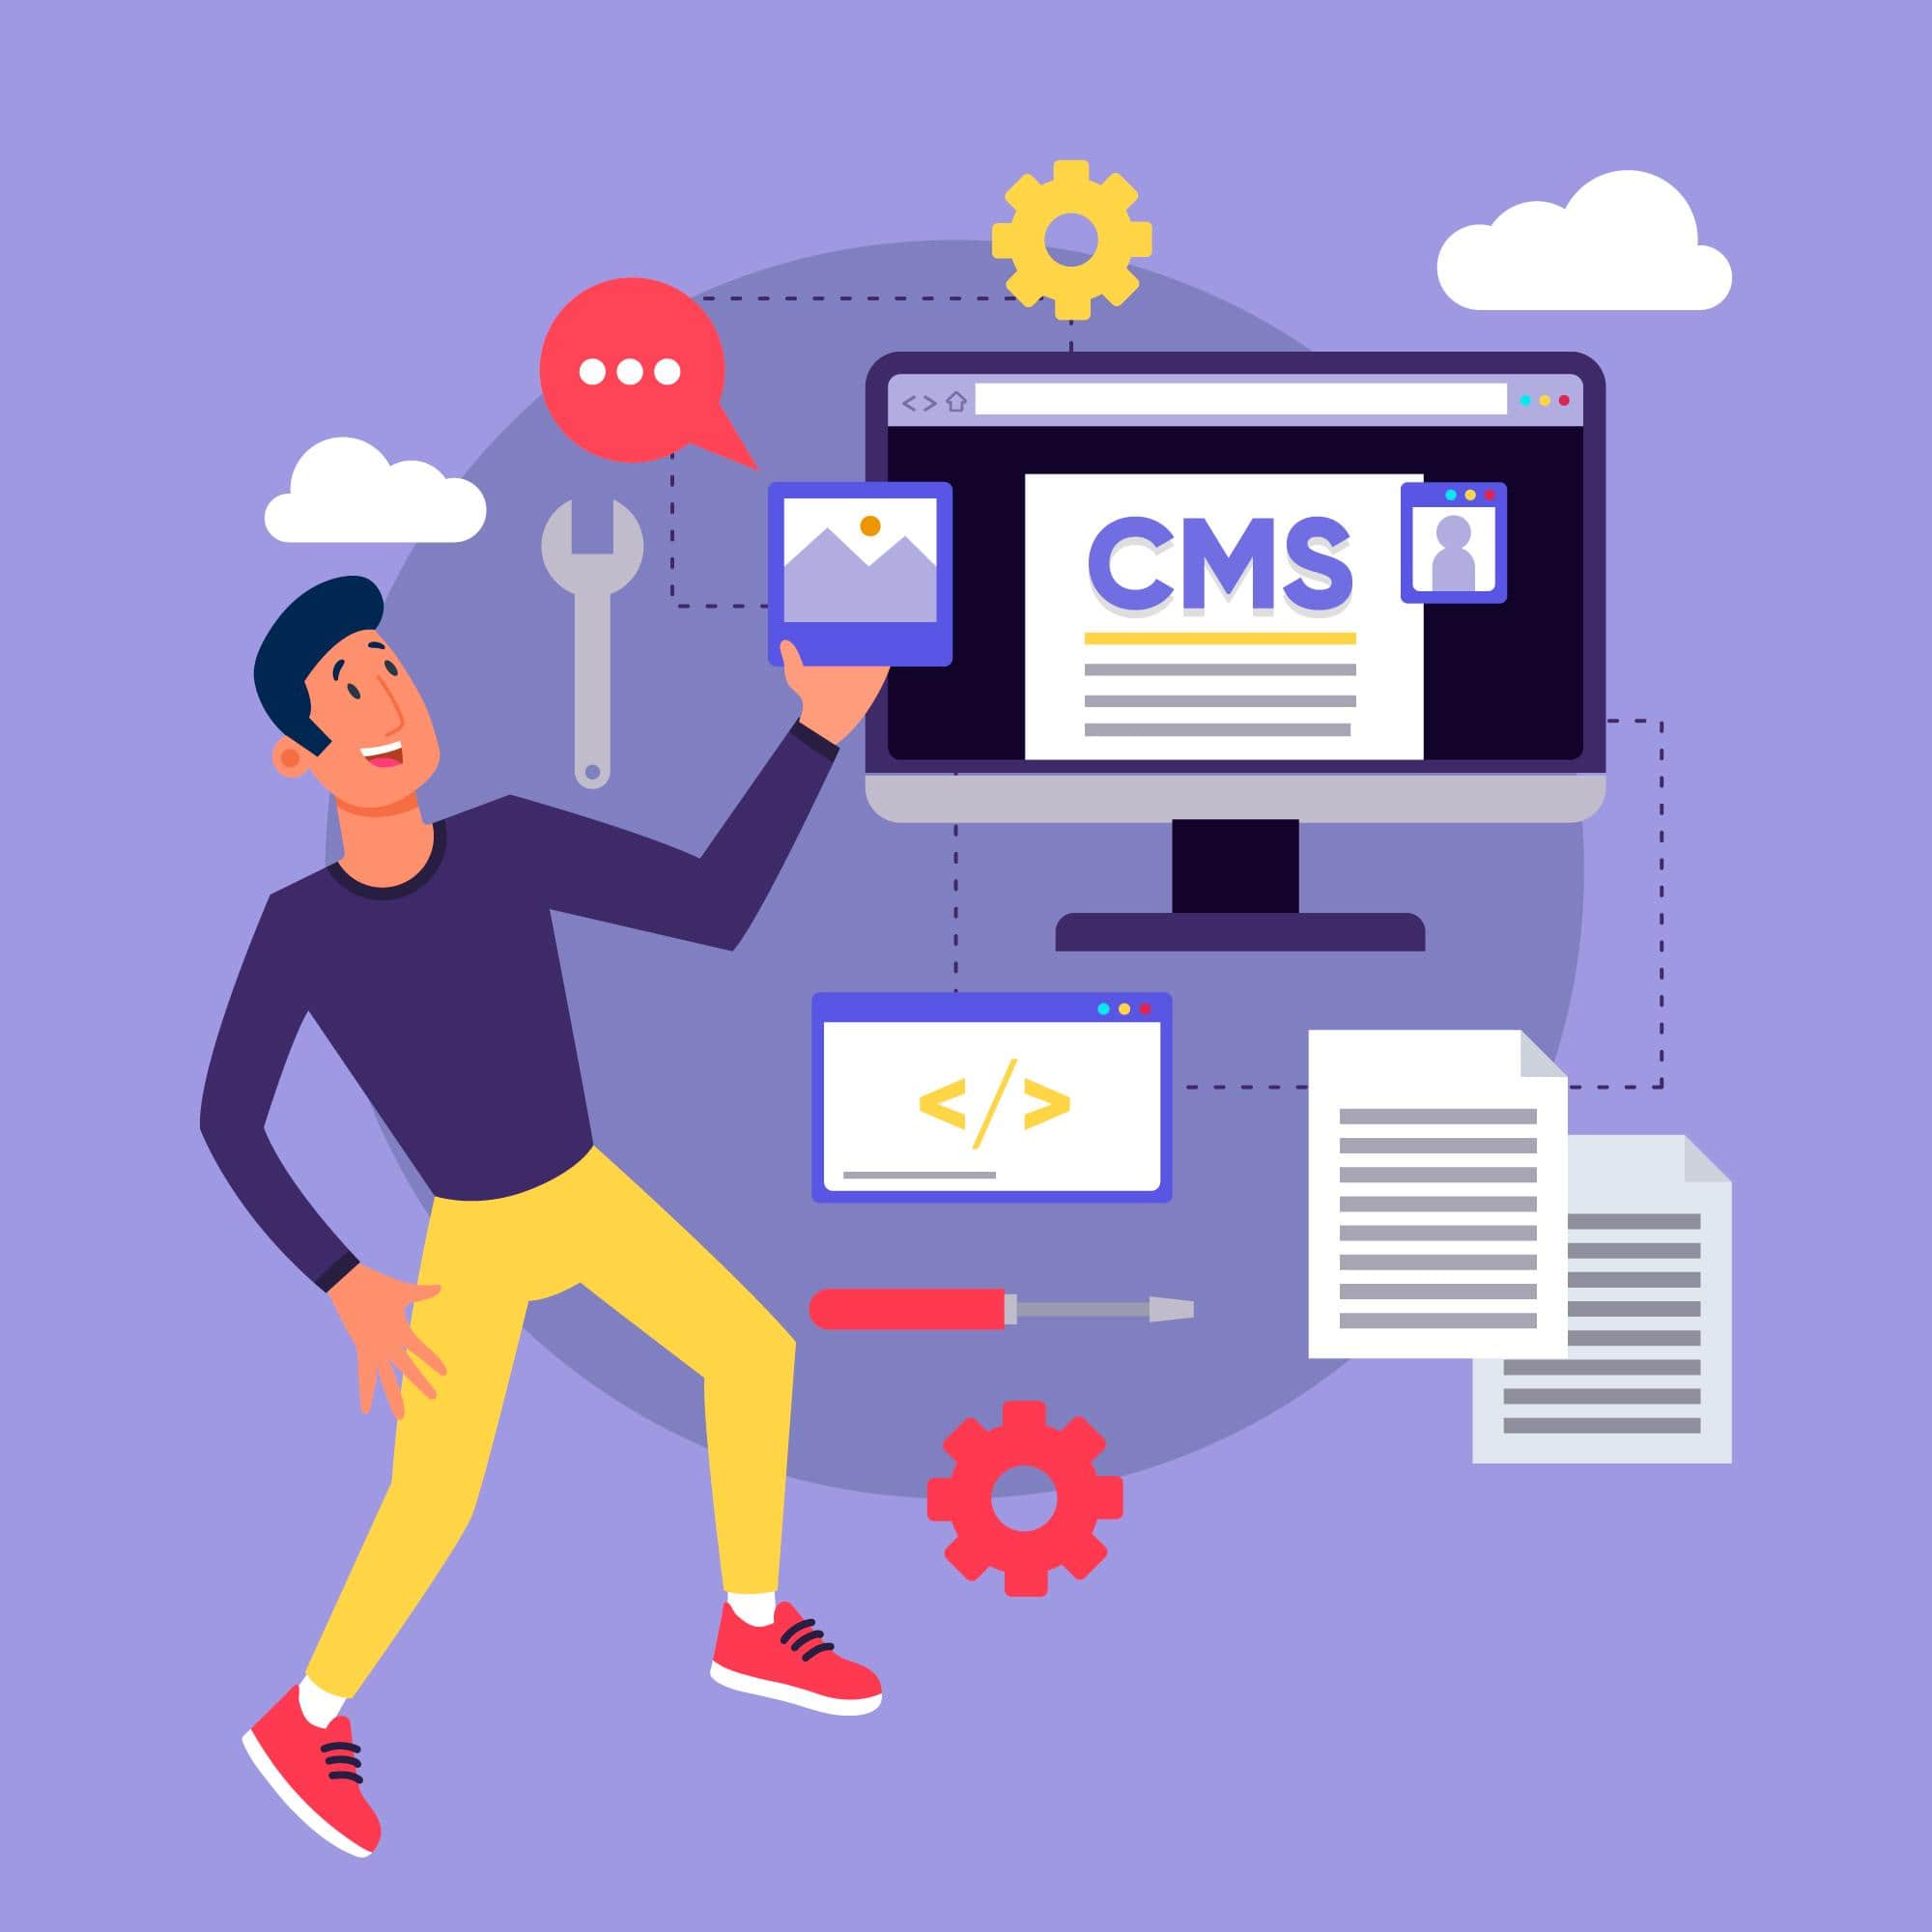 בחירת מערכת ניהול תוכן (CMS) המתאימה לאתר האינטרנט של העסק הקטן שלך